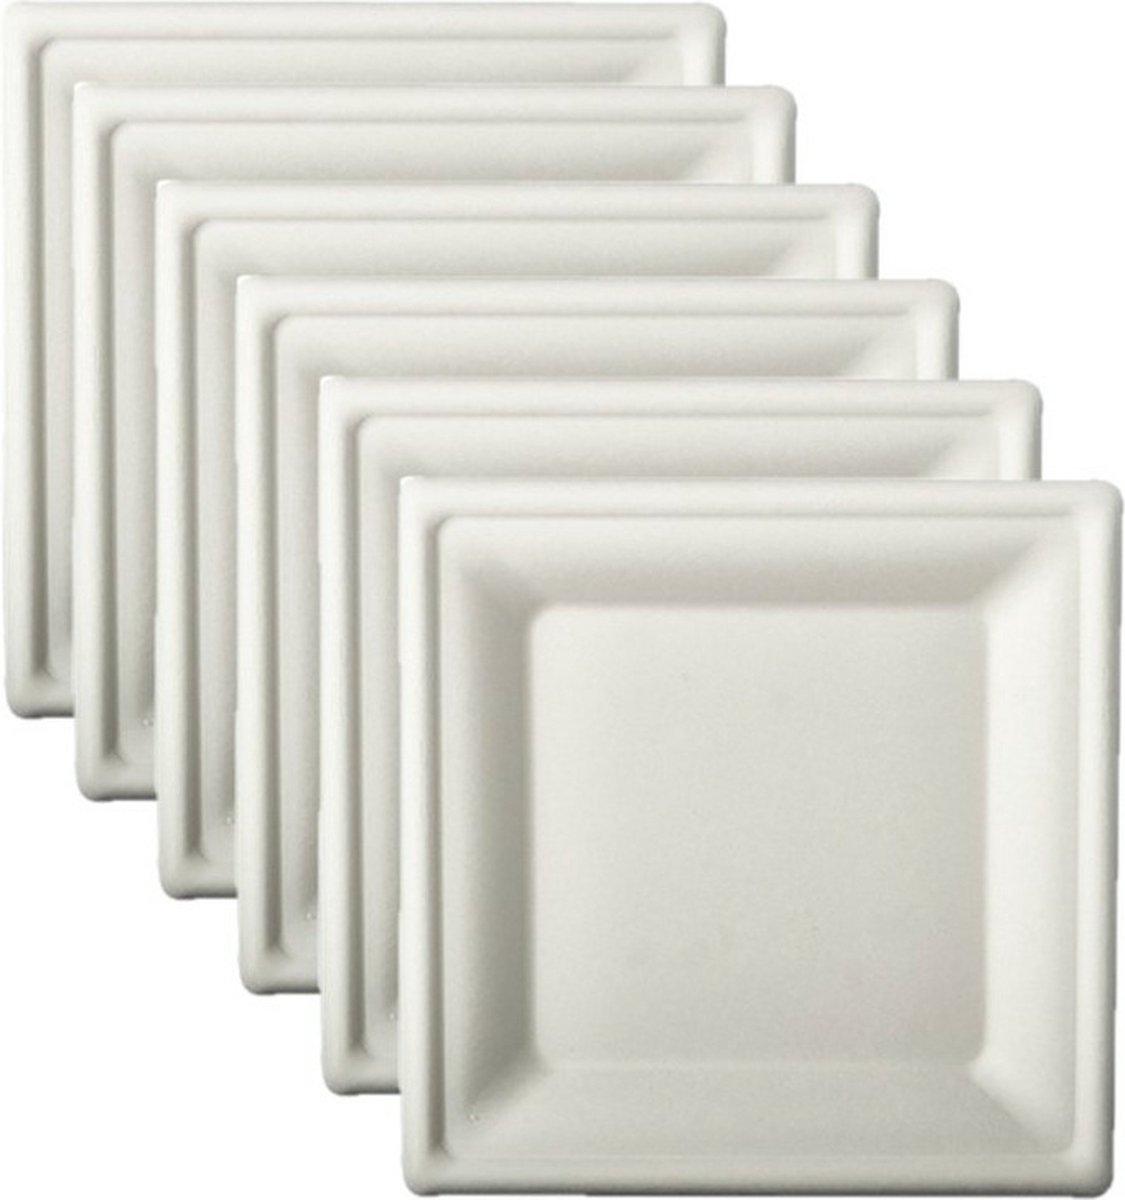 60x stuks witte suikerriet lunchbordjes 20 cm biologisch afbreekbaar - Wegwerp bbq/verjaardag bordjes